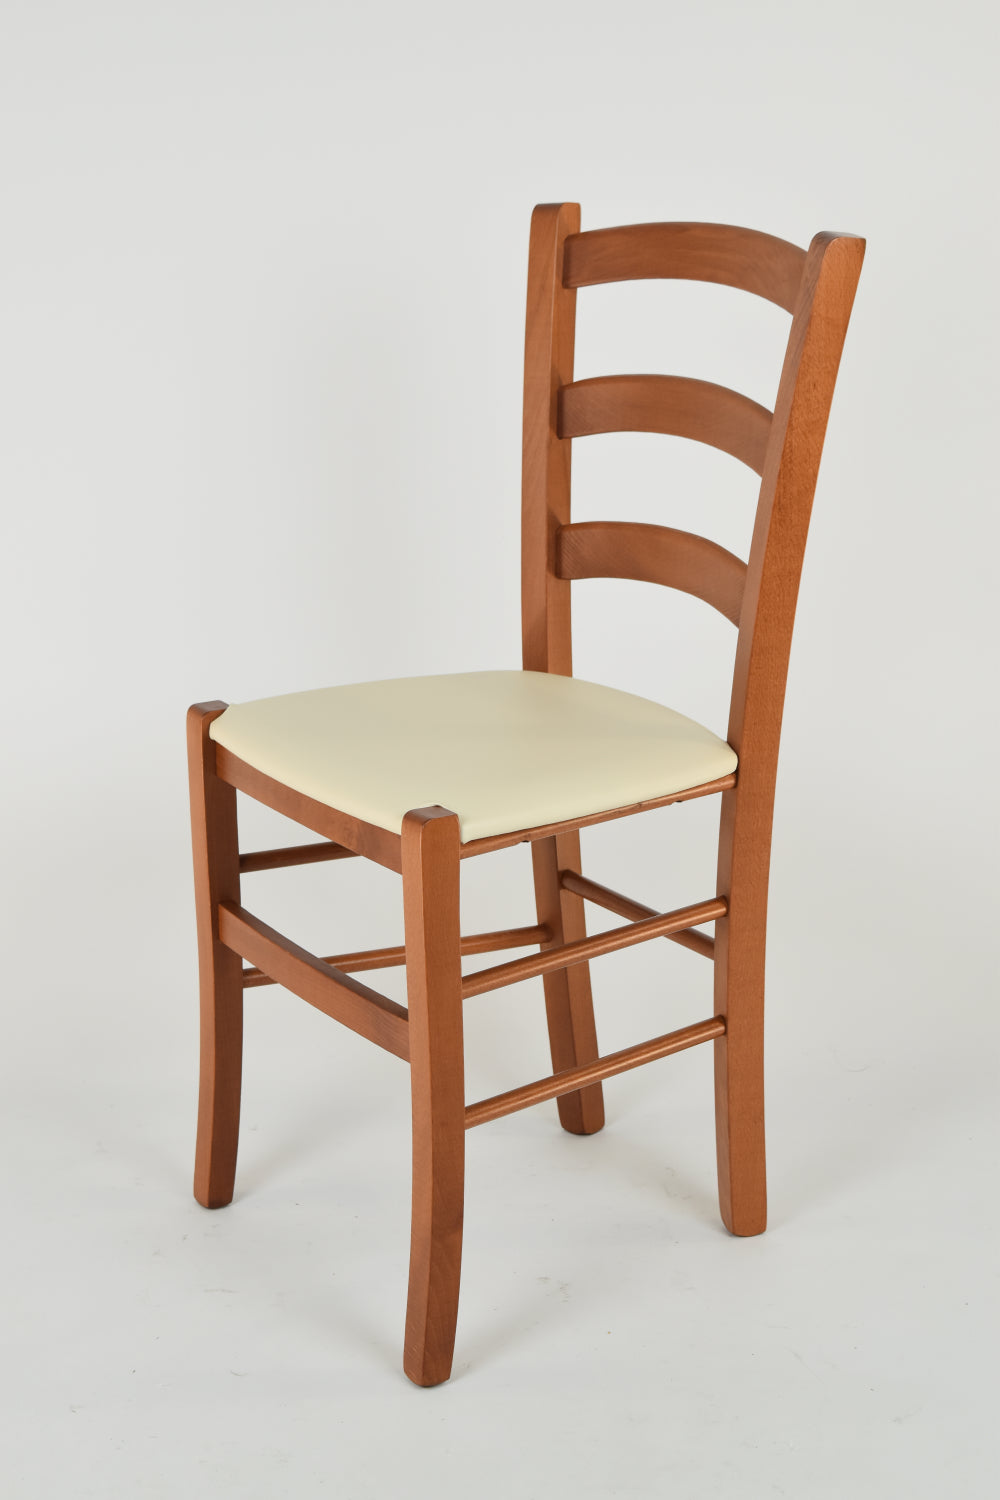 Tommychairs - Set 4 sillas de Cocina y Comedor Venice, Estructura en Madera de Haya Color Cerezo y Asiento tapizado en Polipiel Color Marfil